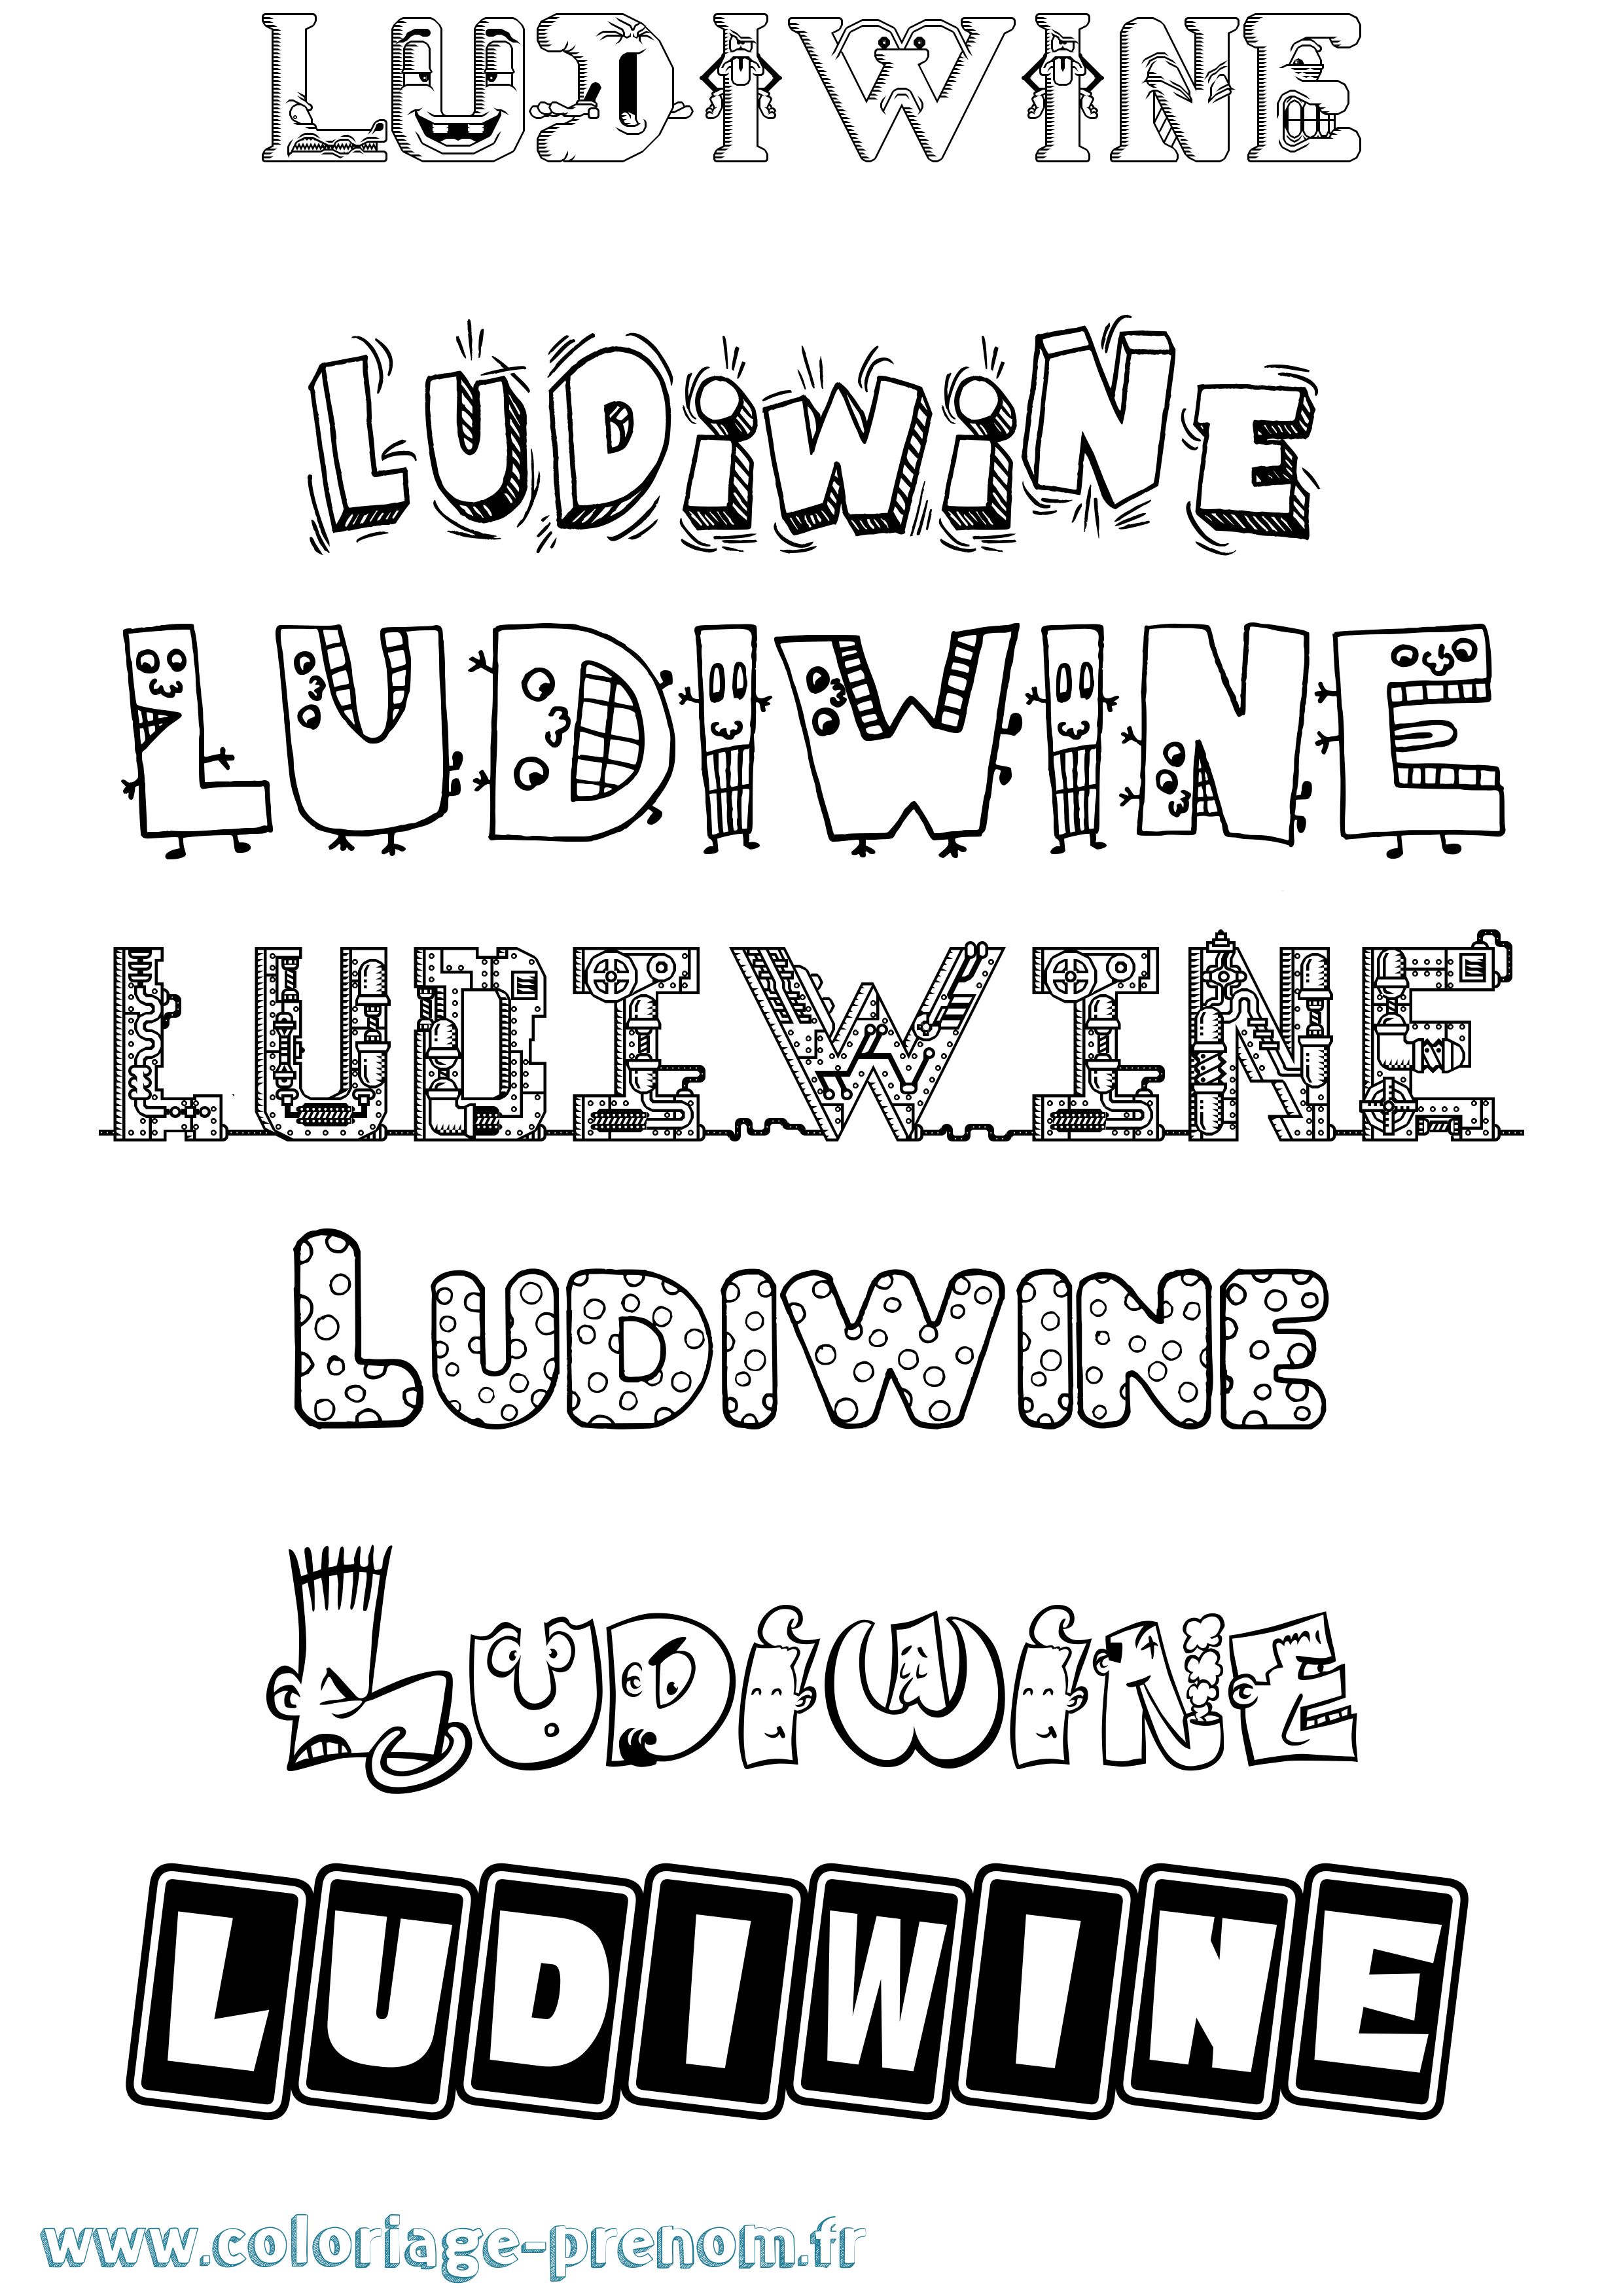 Coloriage prénom Ludiwine Fun